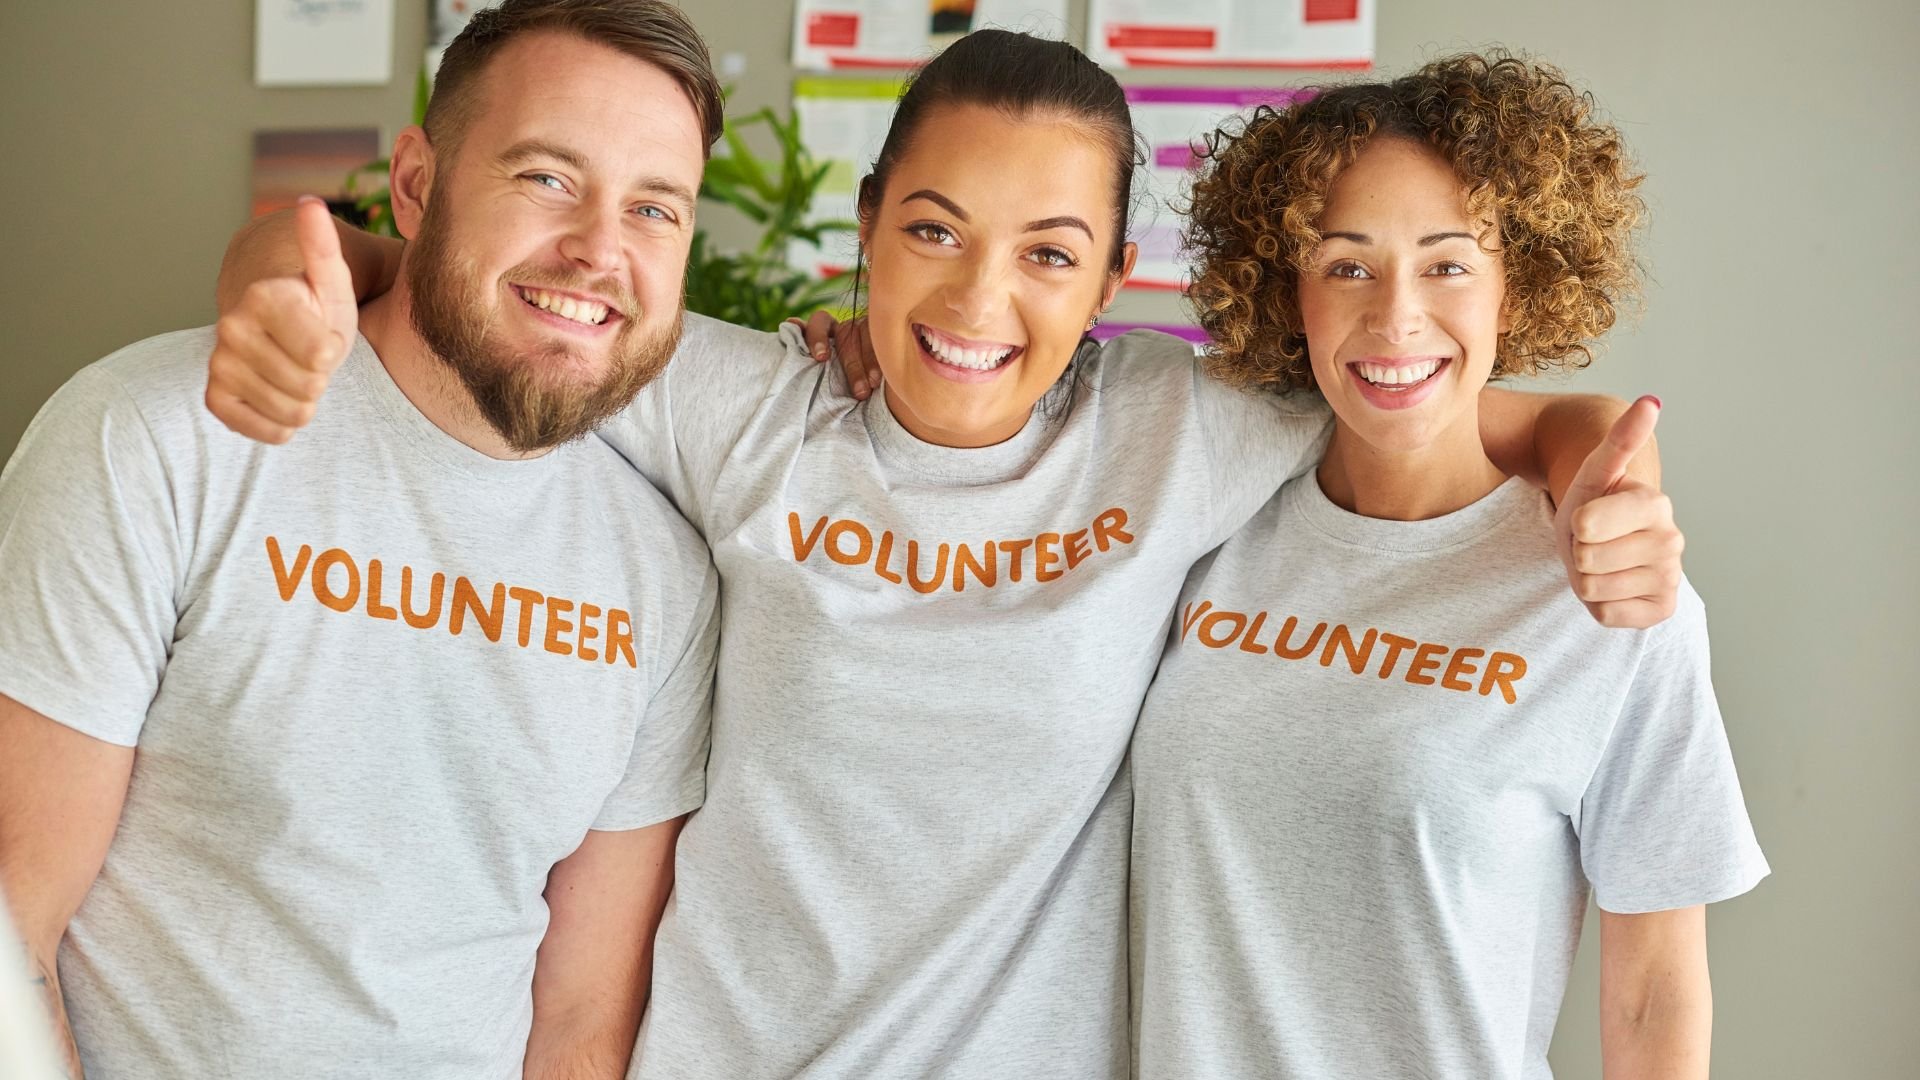 Three smiling people wearing volunteer t-shirts